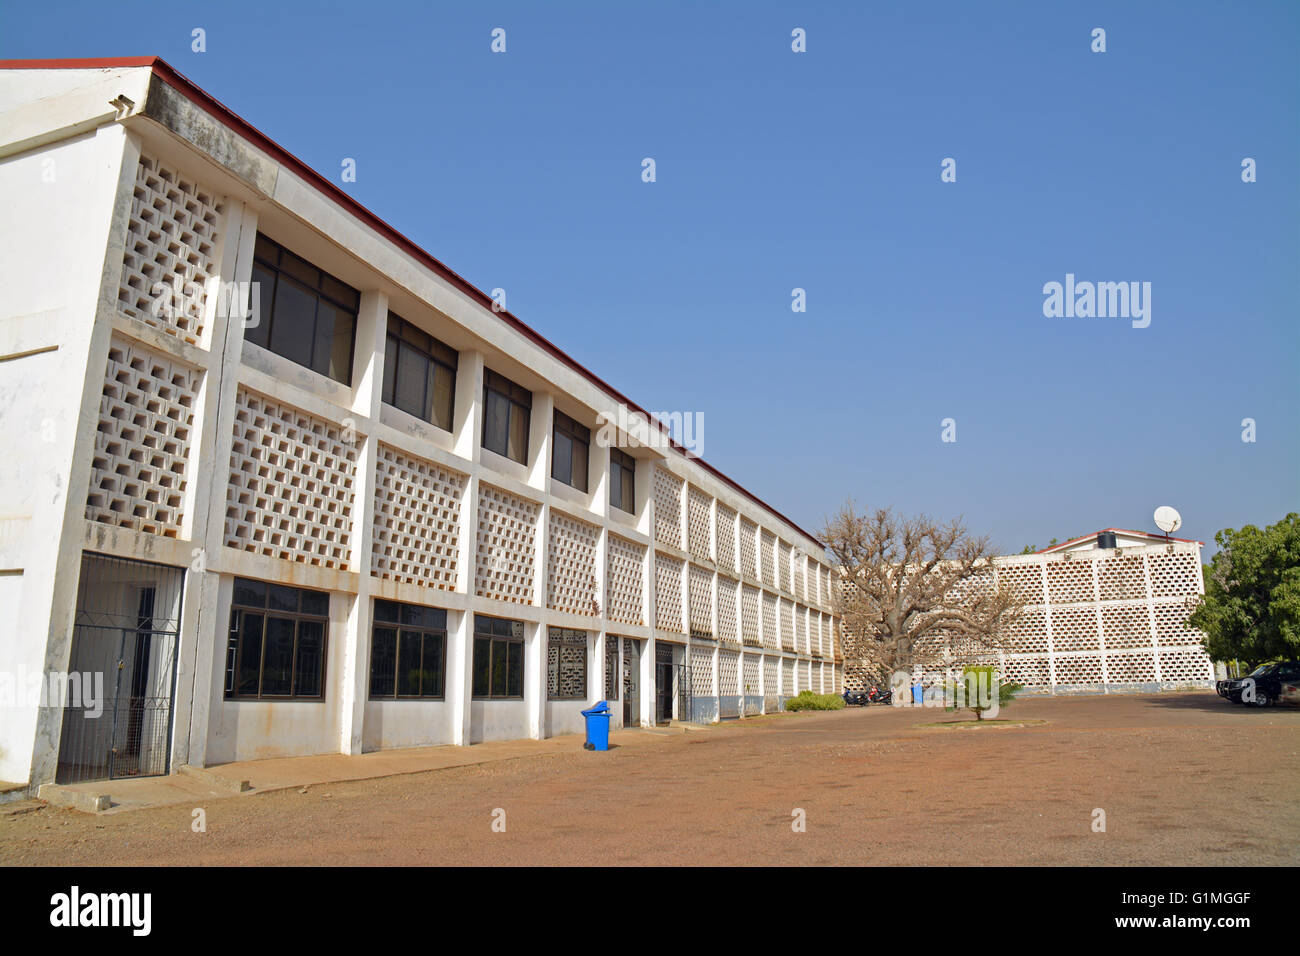 Ghana, Upper East regional ministry, white office building Stock Photo